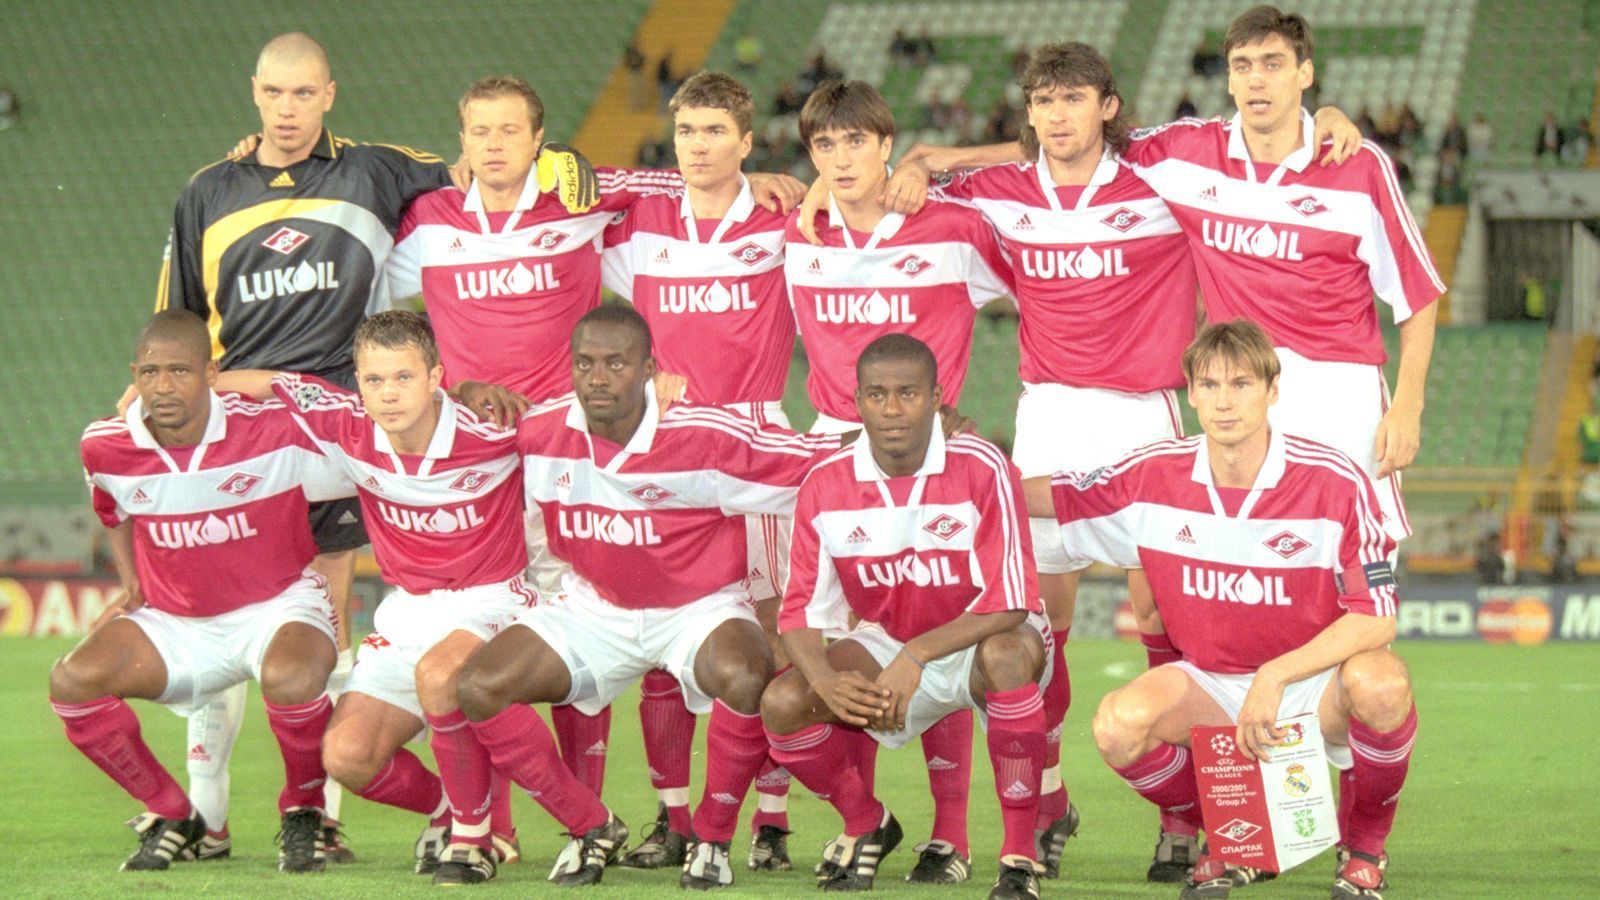 
                <strong>Platz 8 - Russland: Spartak Moskau</strong><br>
                &#x2022; Anzahl der Meistertitel in Serie: 6 - <br>&#x2022; Zeitpunkt der Meister-Serie: 1996-2001<br>
              